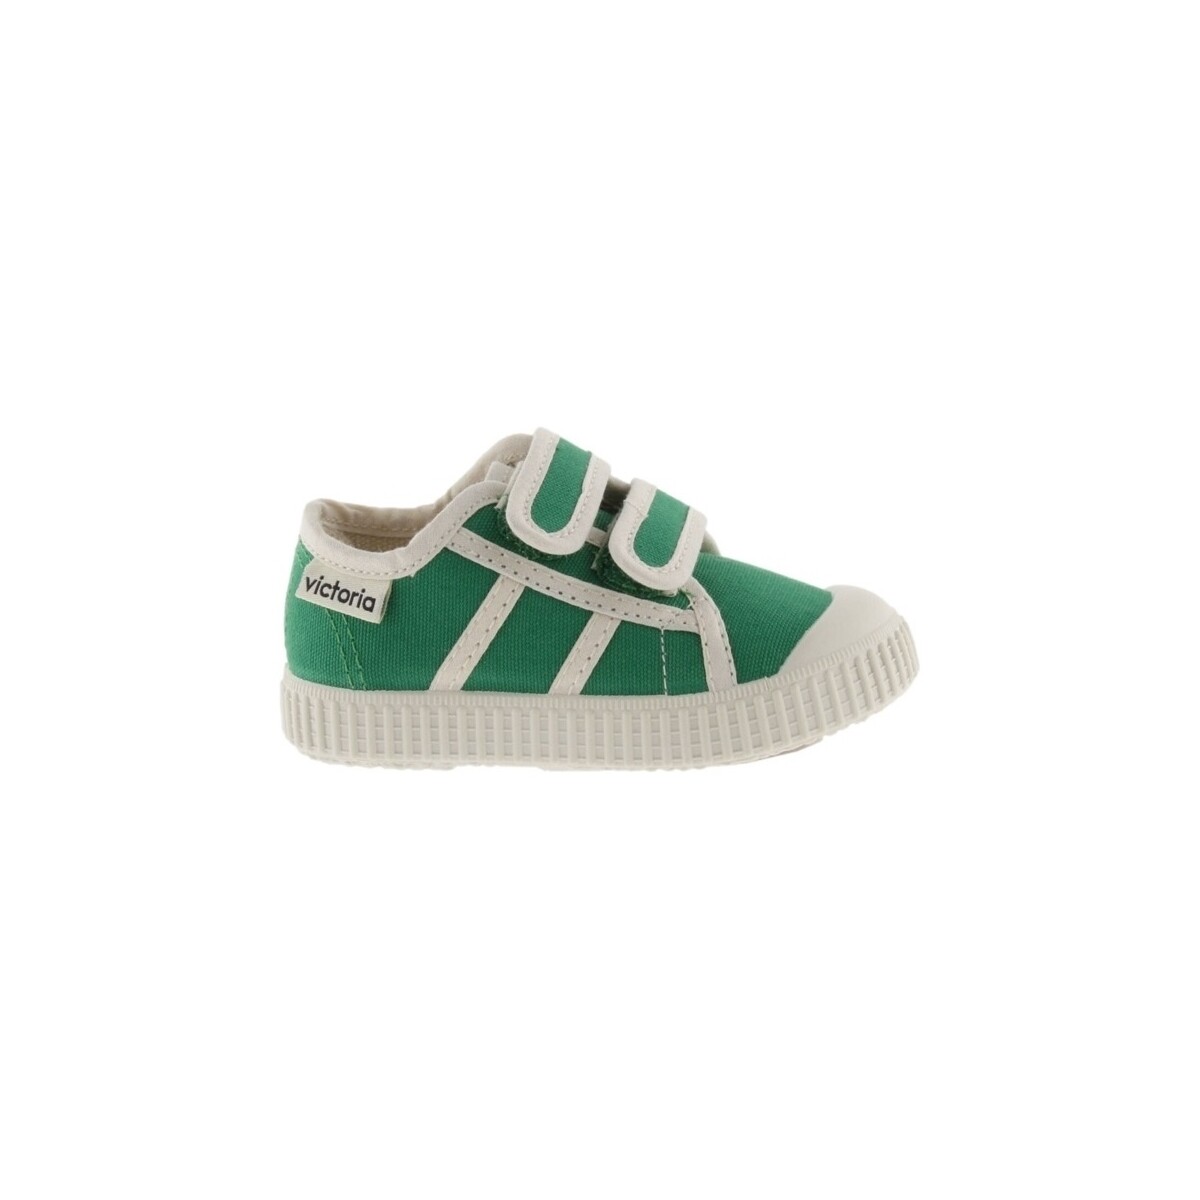 Schuhe Kinder Sneaker Victoria Baby 366156 - Verde Grün